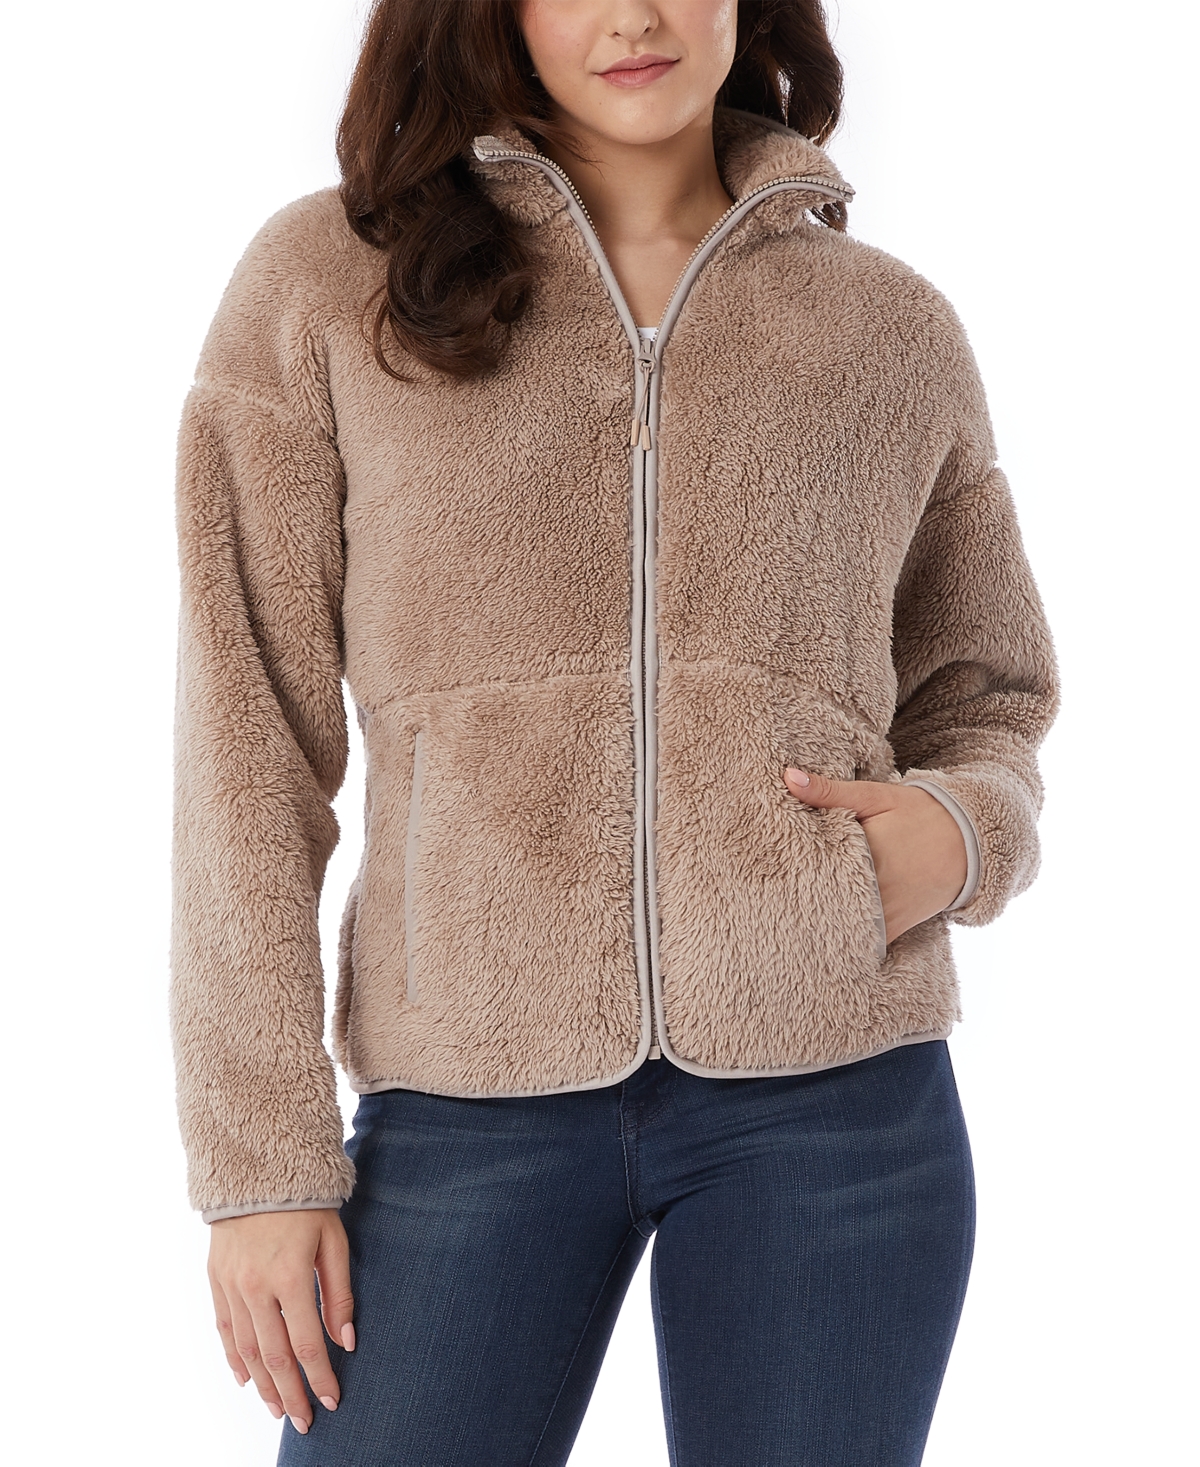 Women's Fleece Front-Zipper Drop-Shoulder Sweatshirt - MOCHA MERINGUE